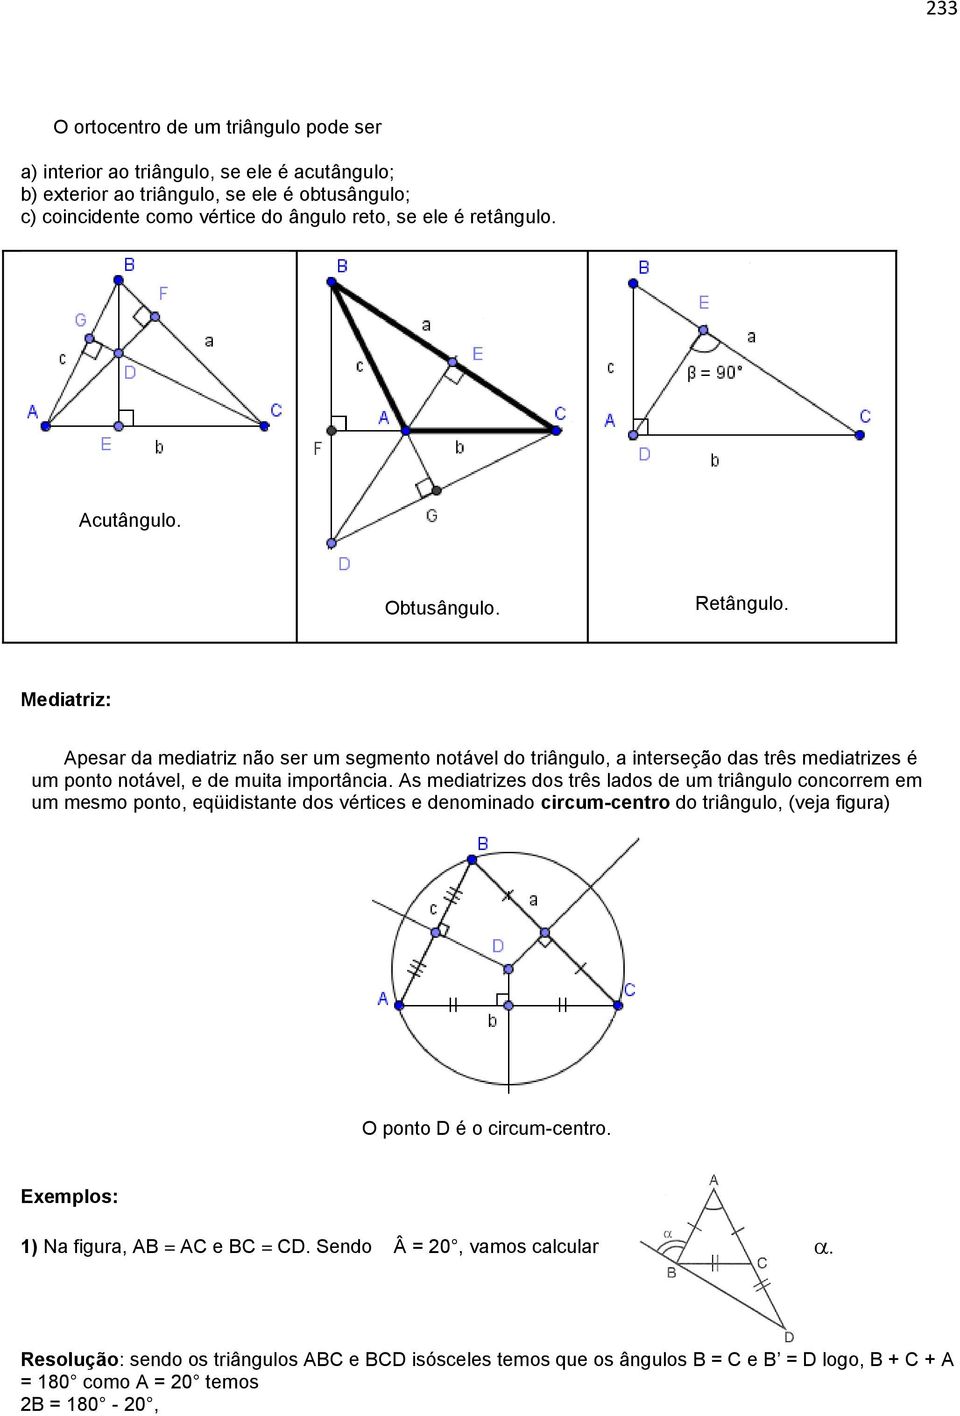 Mediatriz: Apesar da mediatriz não ser um segmento notável do triângulo, a interseção das três mediatrizes é um ponto notável, e de muita importância.